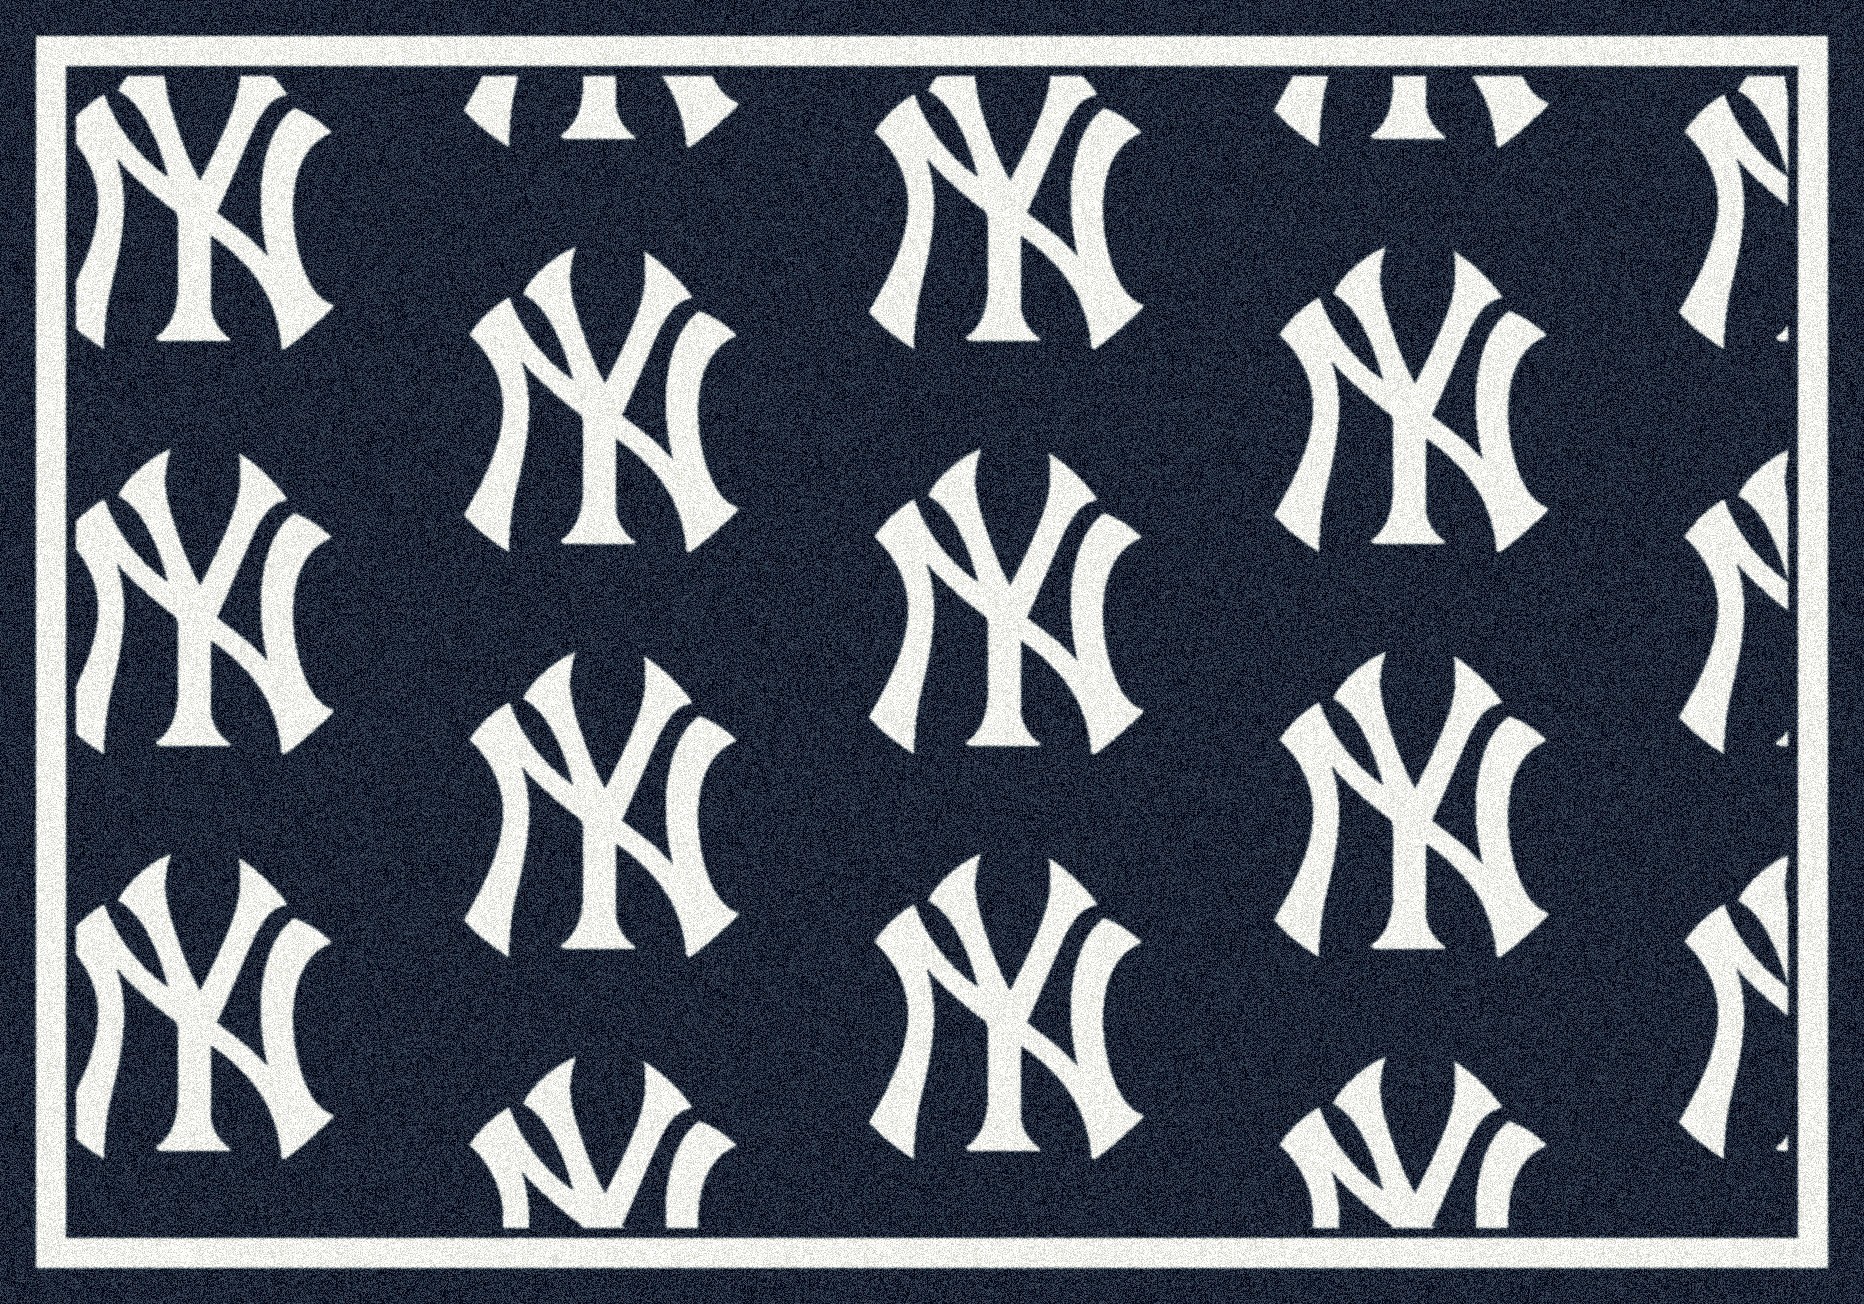 New York Yankees Baseball Mlb Fk Wallpaper